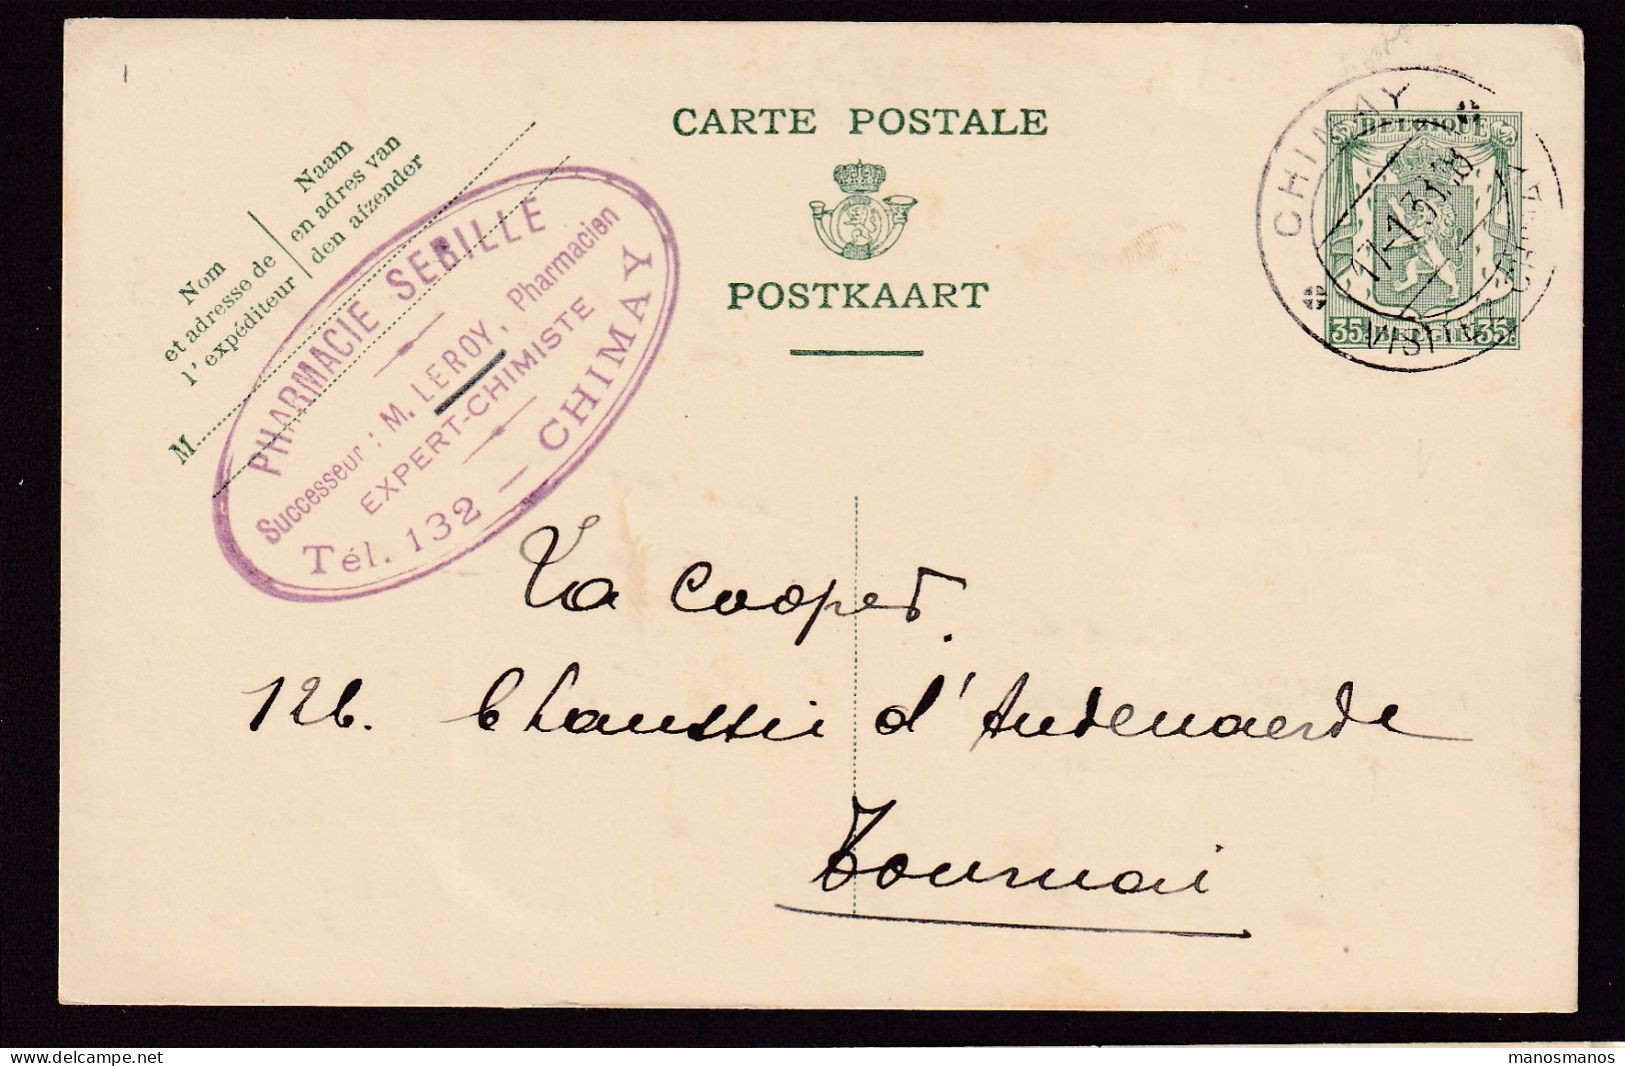 DDEE 867 -- Entier Postal Petit Sceau CHIMAY 1938 à TOURNAI - Cachet Privé Pharmacie Sebille, Leroy Pharmacien-Chimiste - Cartes Postales 1934-1951